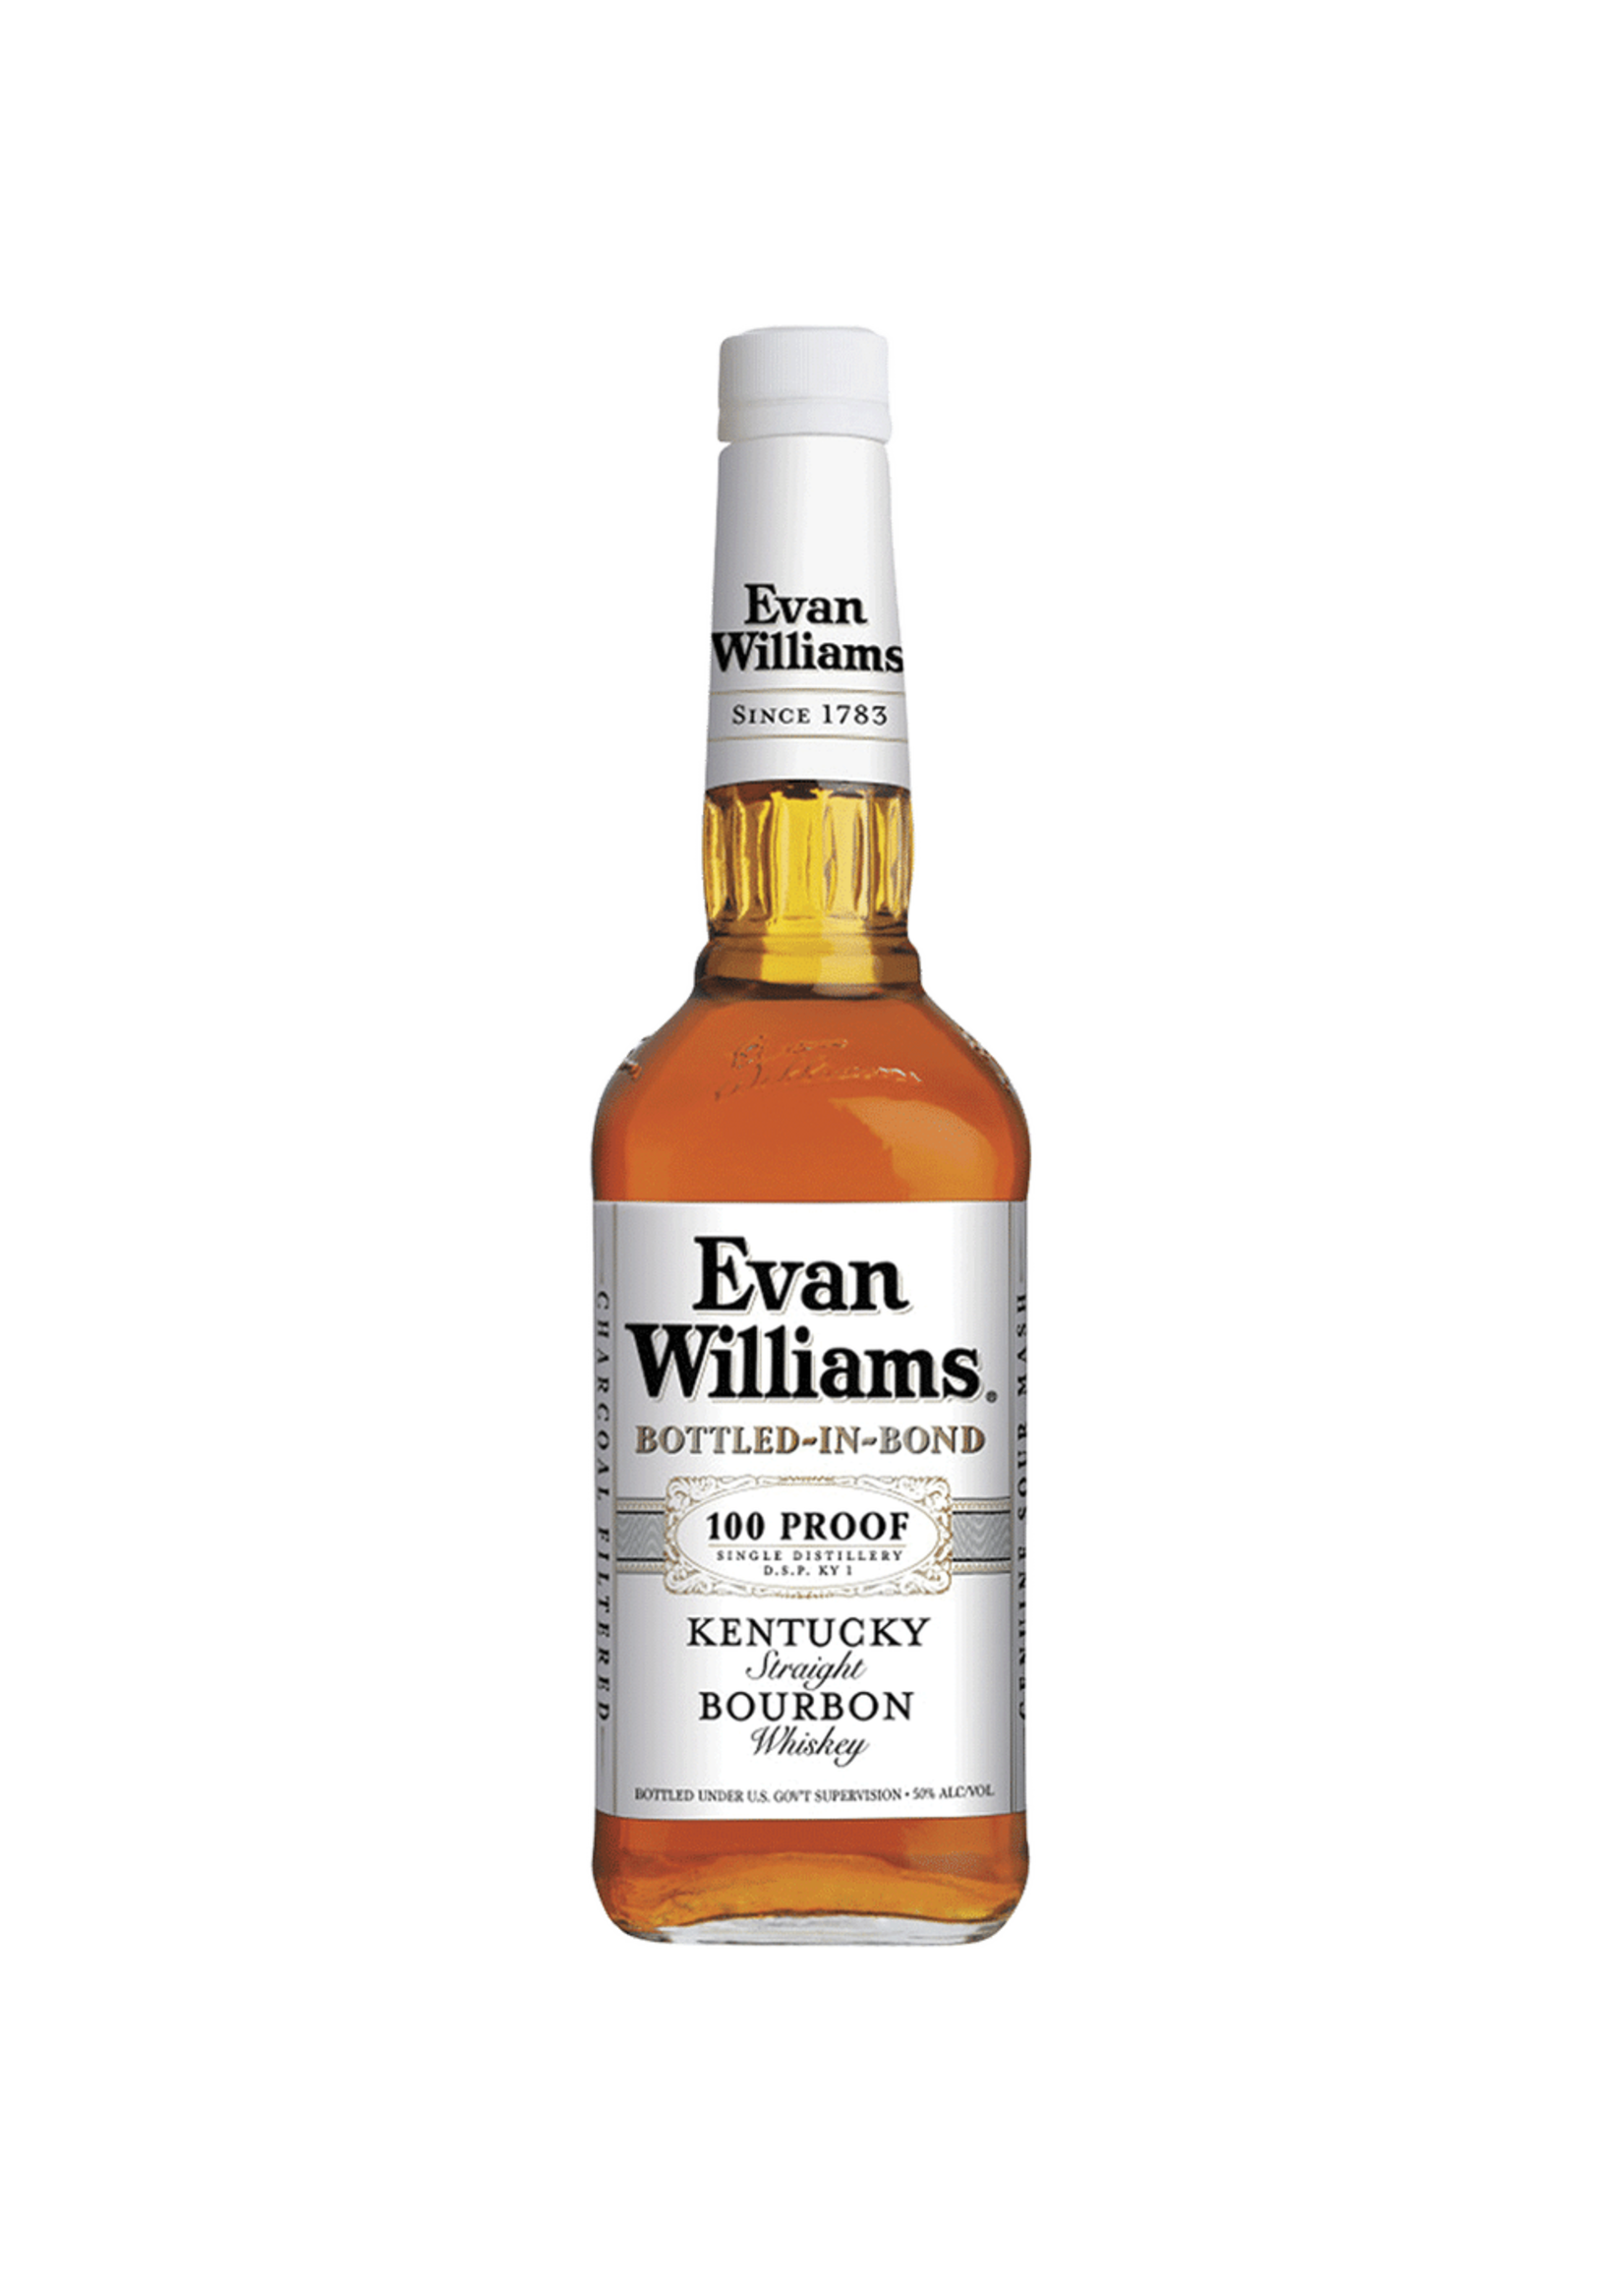 Evan Williams Bourbon Evan Williams Straight Bourbon White Label Bottled In Bond 100Proof 750ml